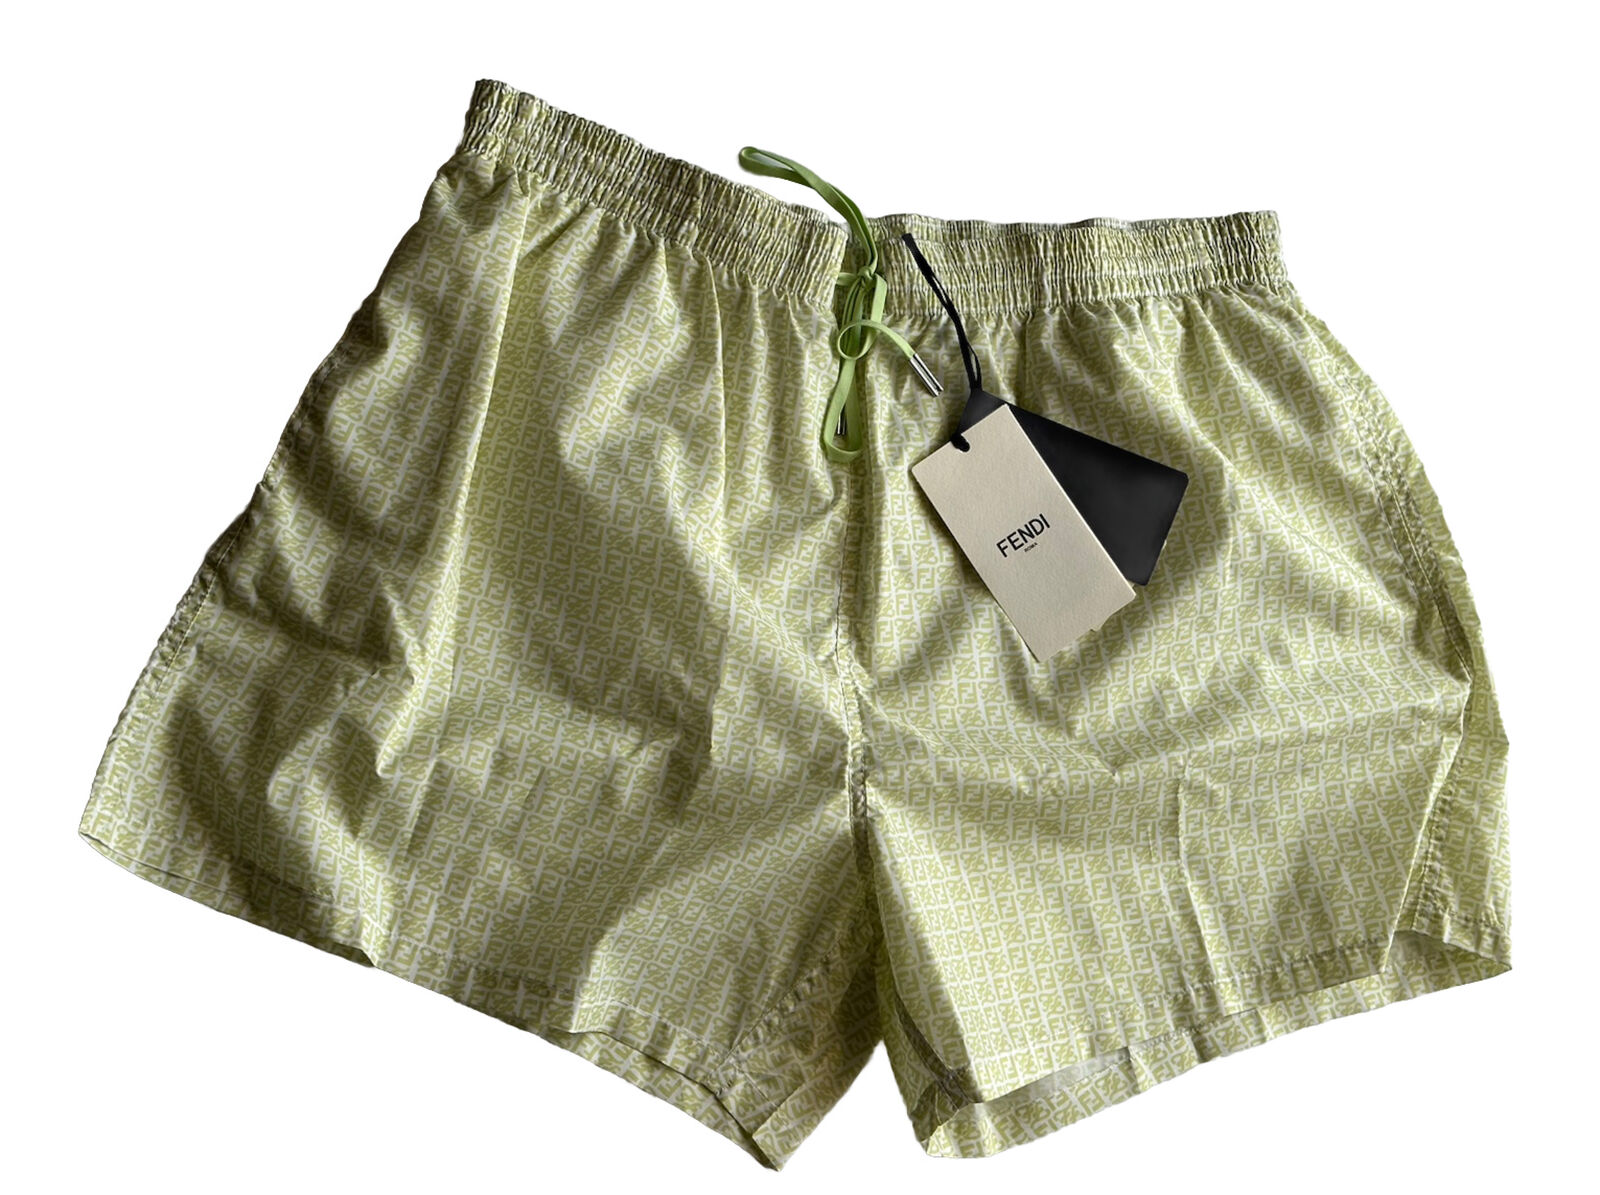 Мужские светло-зеленые шорты-боксеры для плавания Fendi FF, NWT, 580 долларов США, 40 долларов США (56 евро), IT FXB077 